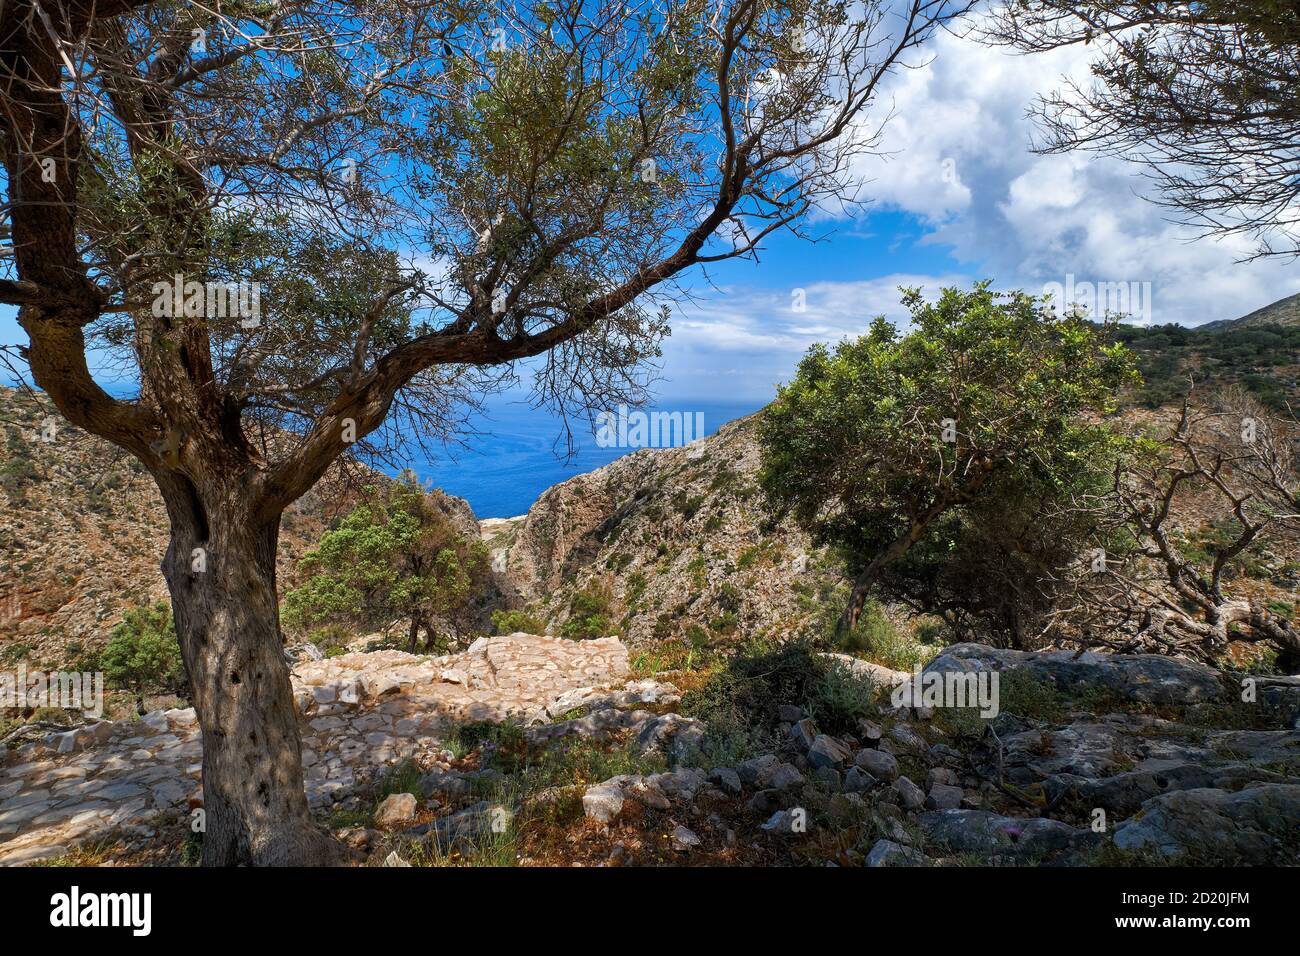 Typisch griechische Landschaft, Hügel mit frischen Frühlingsbüschen. Großer Olivenbaum, gepflasterter felsiger Weg. Blauer Himmel, Wolken. Meer im Hintergrund. Akrotiri, Kreta, Griechenland Stockfoto